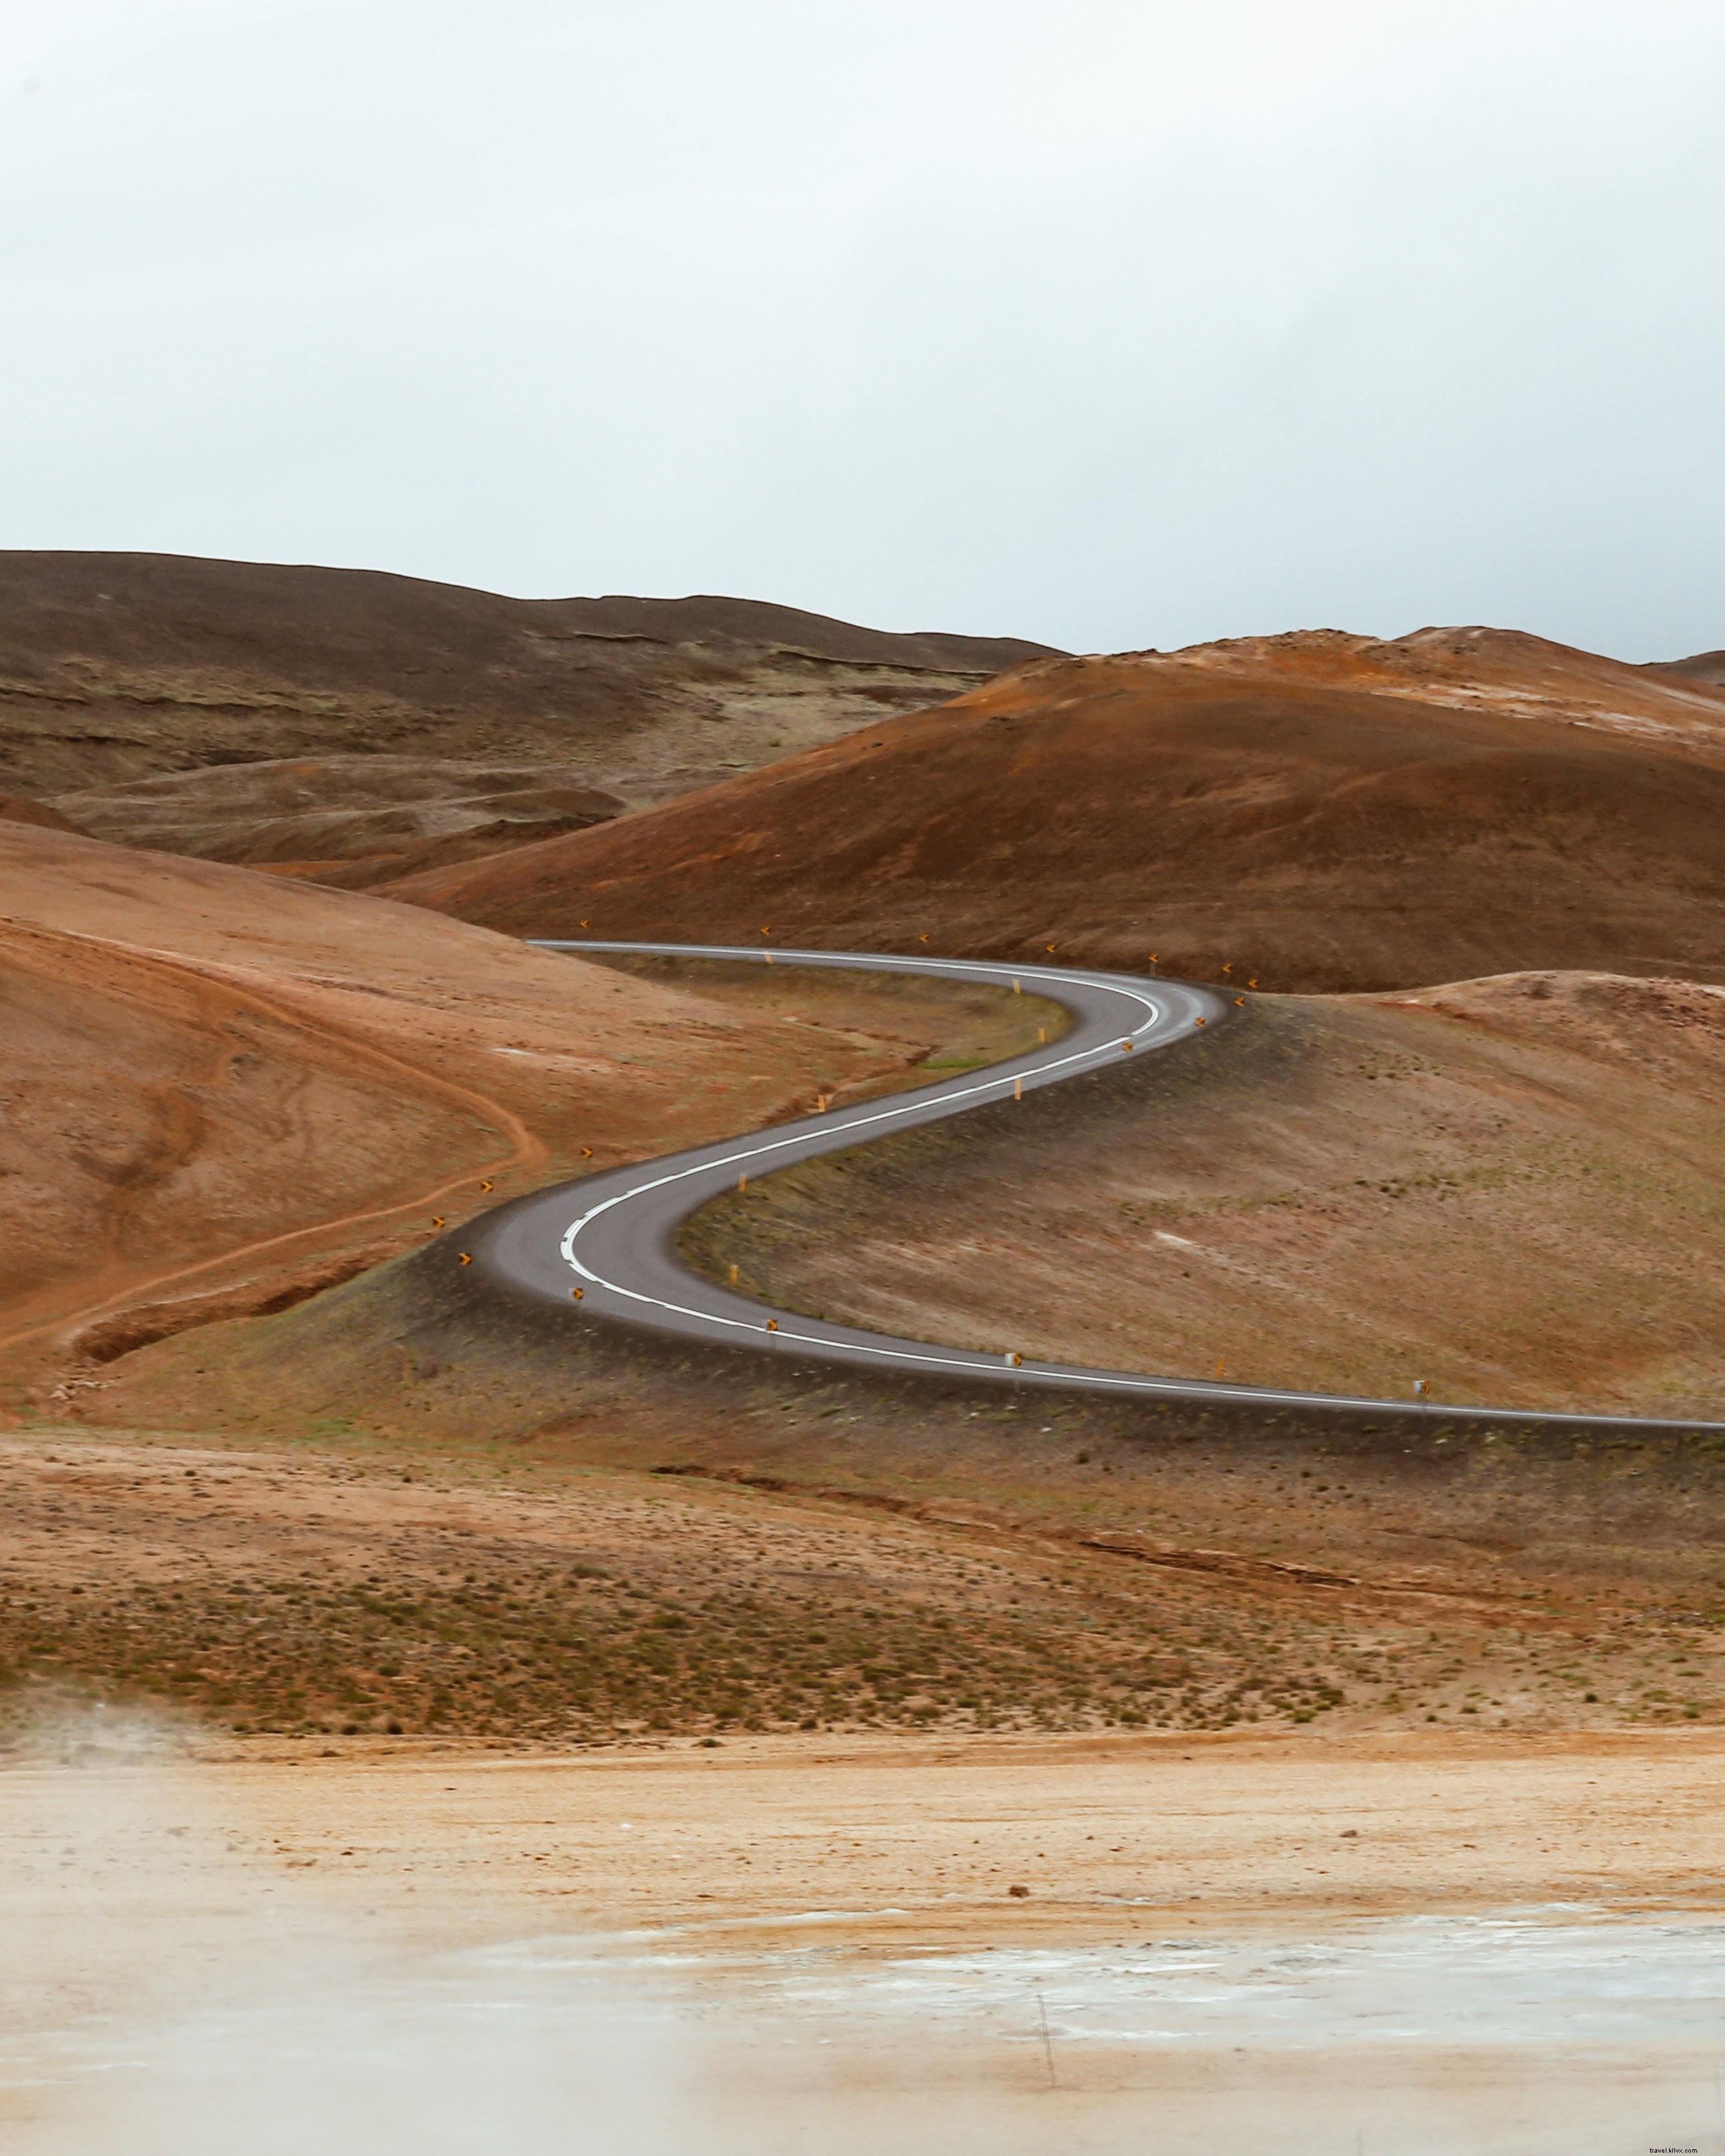 Carretera sinuosa en el desierto arenoso Foto